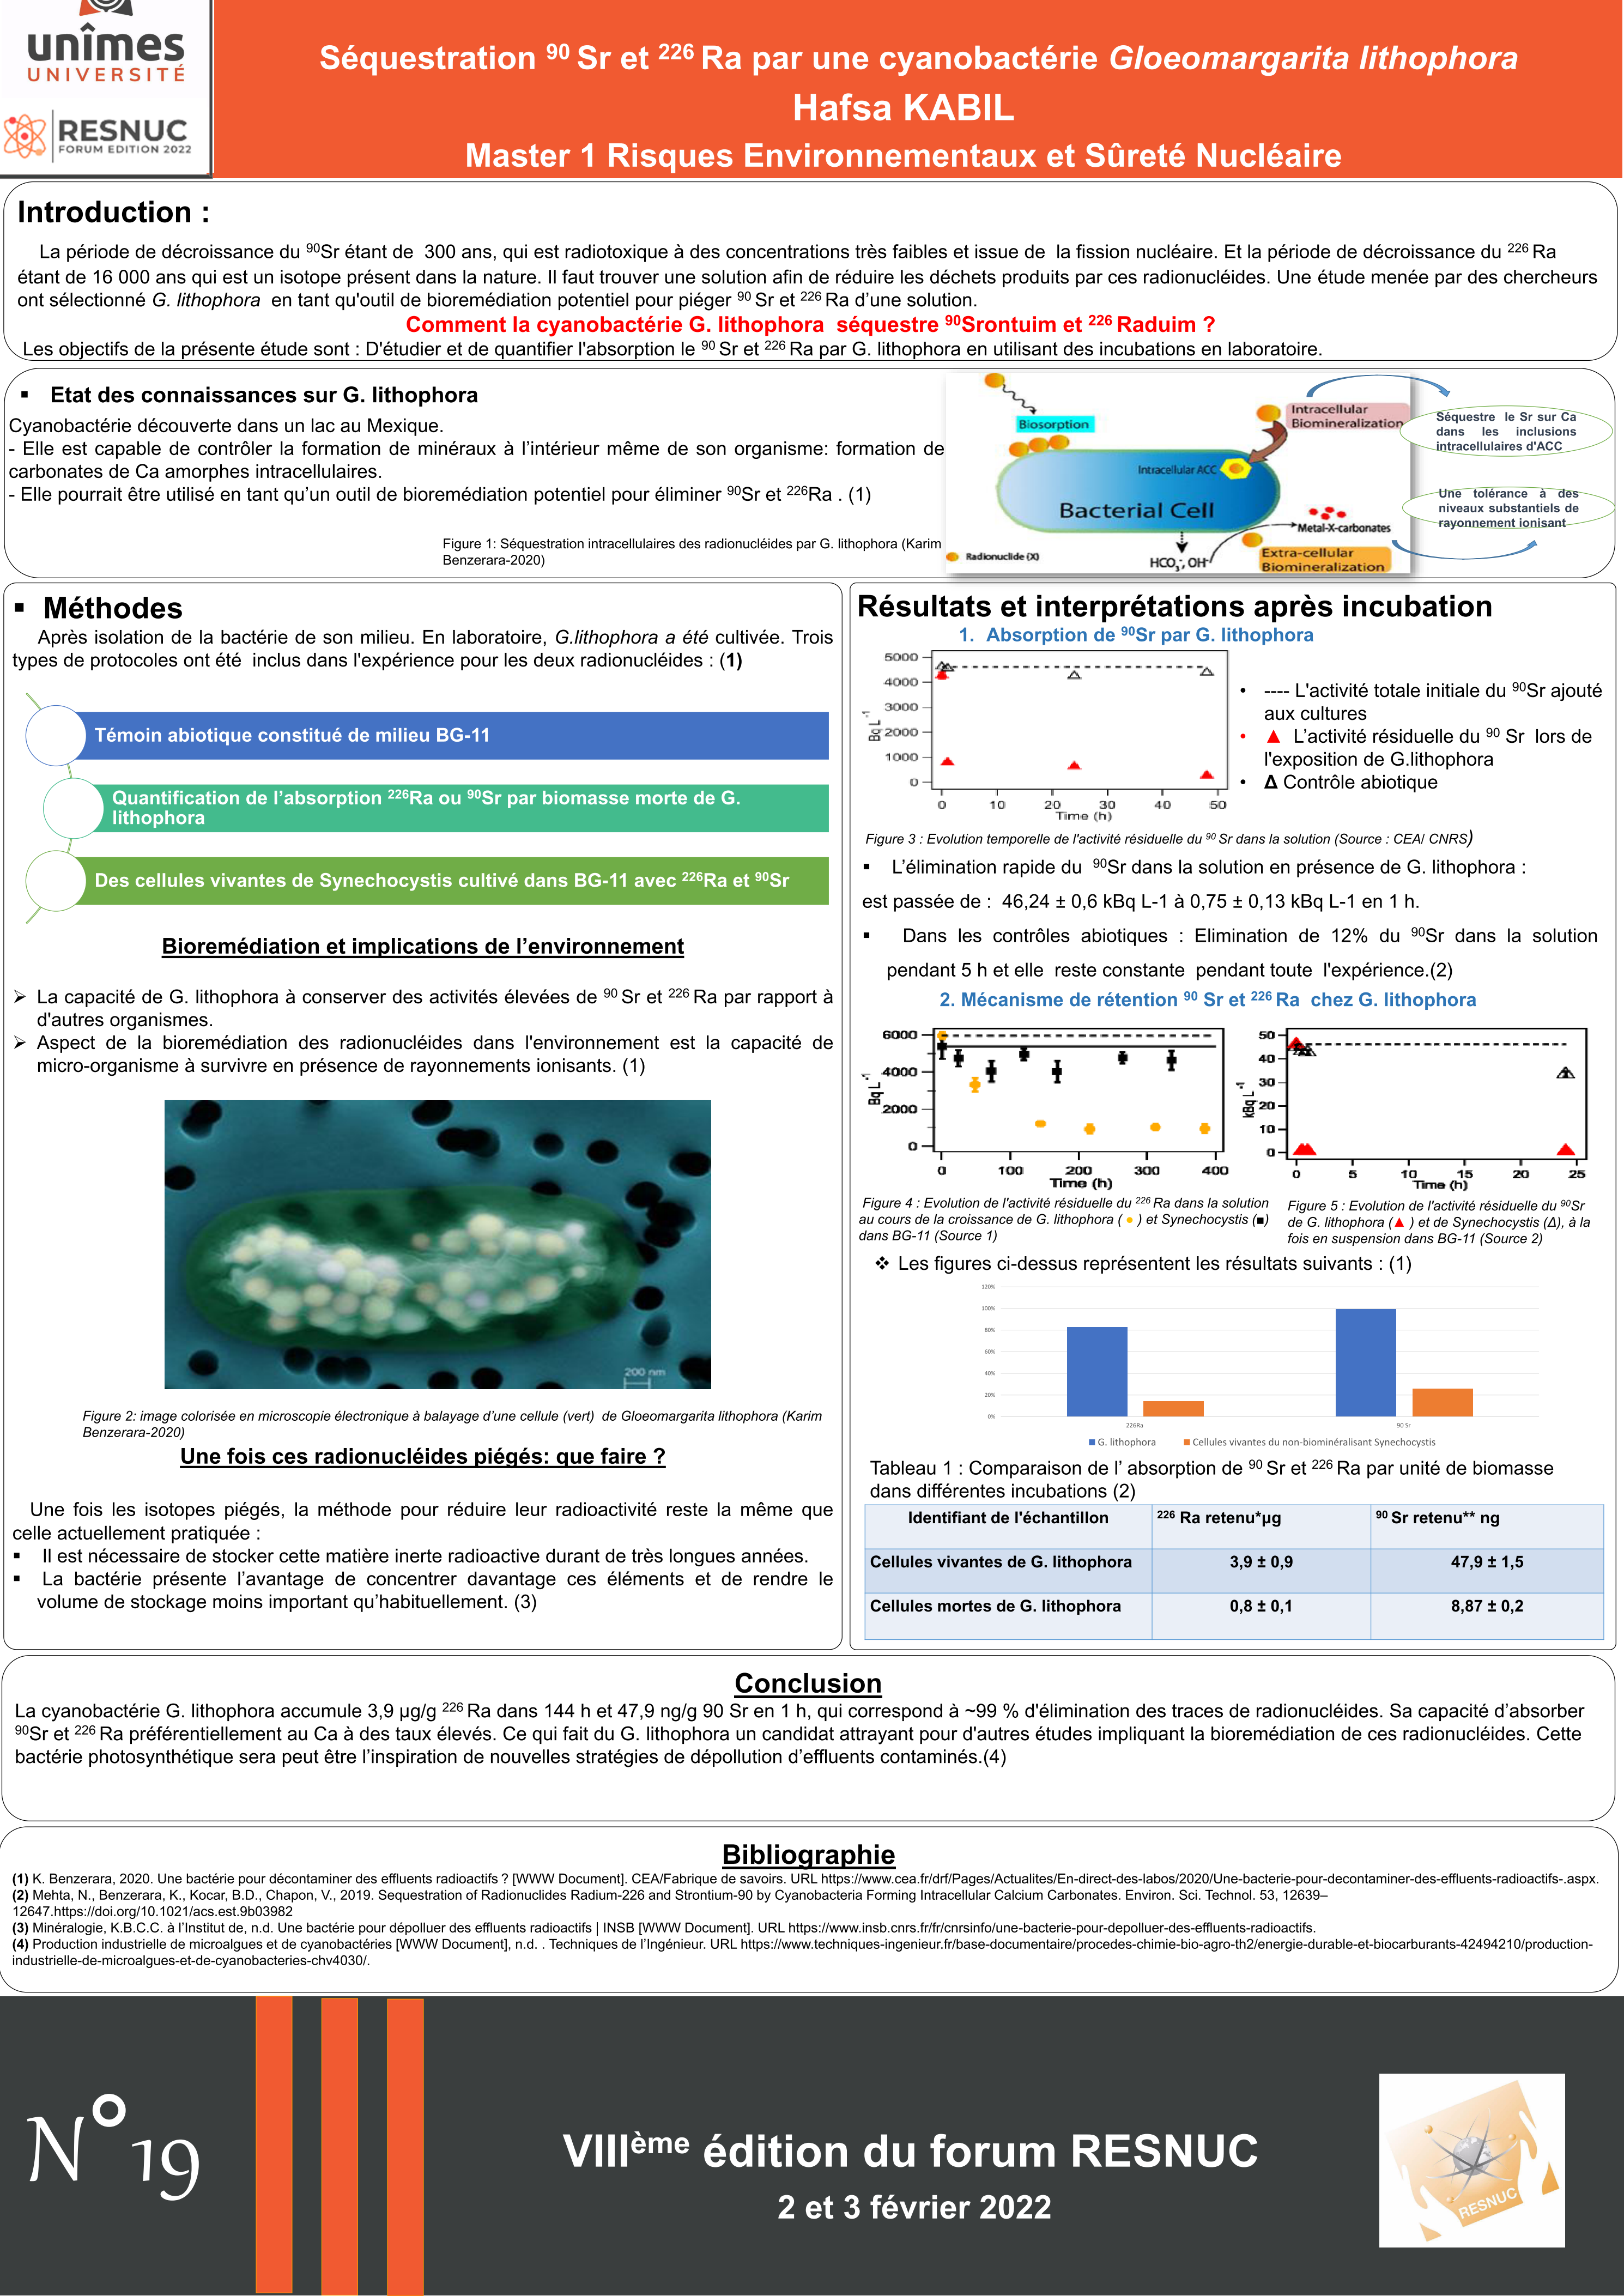 Poster #19 : Séquestration 90Sr et 226Ra par une cyanobactérie Gloeomargarita lithophora